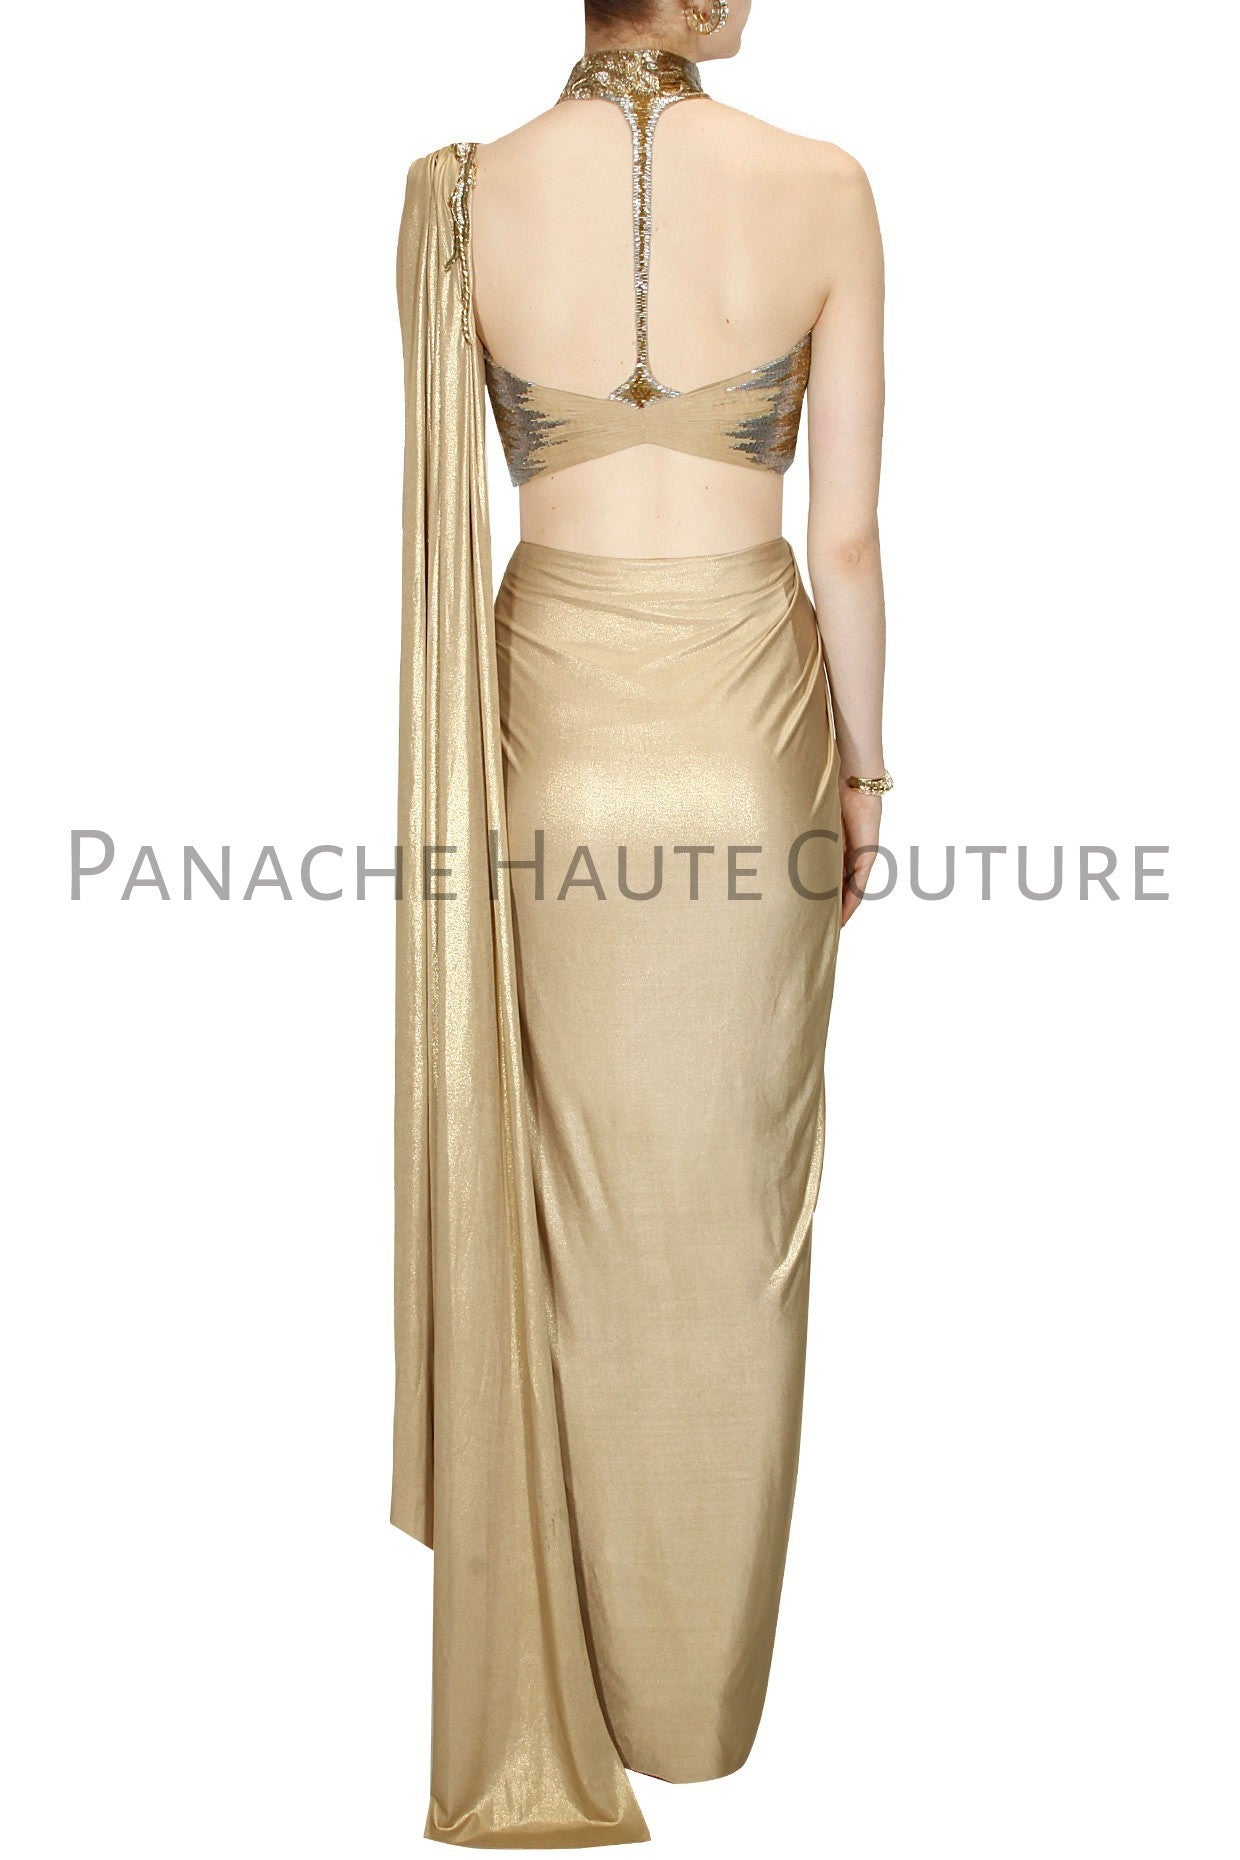 Latest Silk gown design ideas 2021 || Saree pattern long gown dress design  || Saree dress designs - YouTube